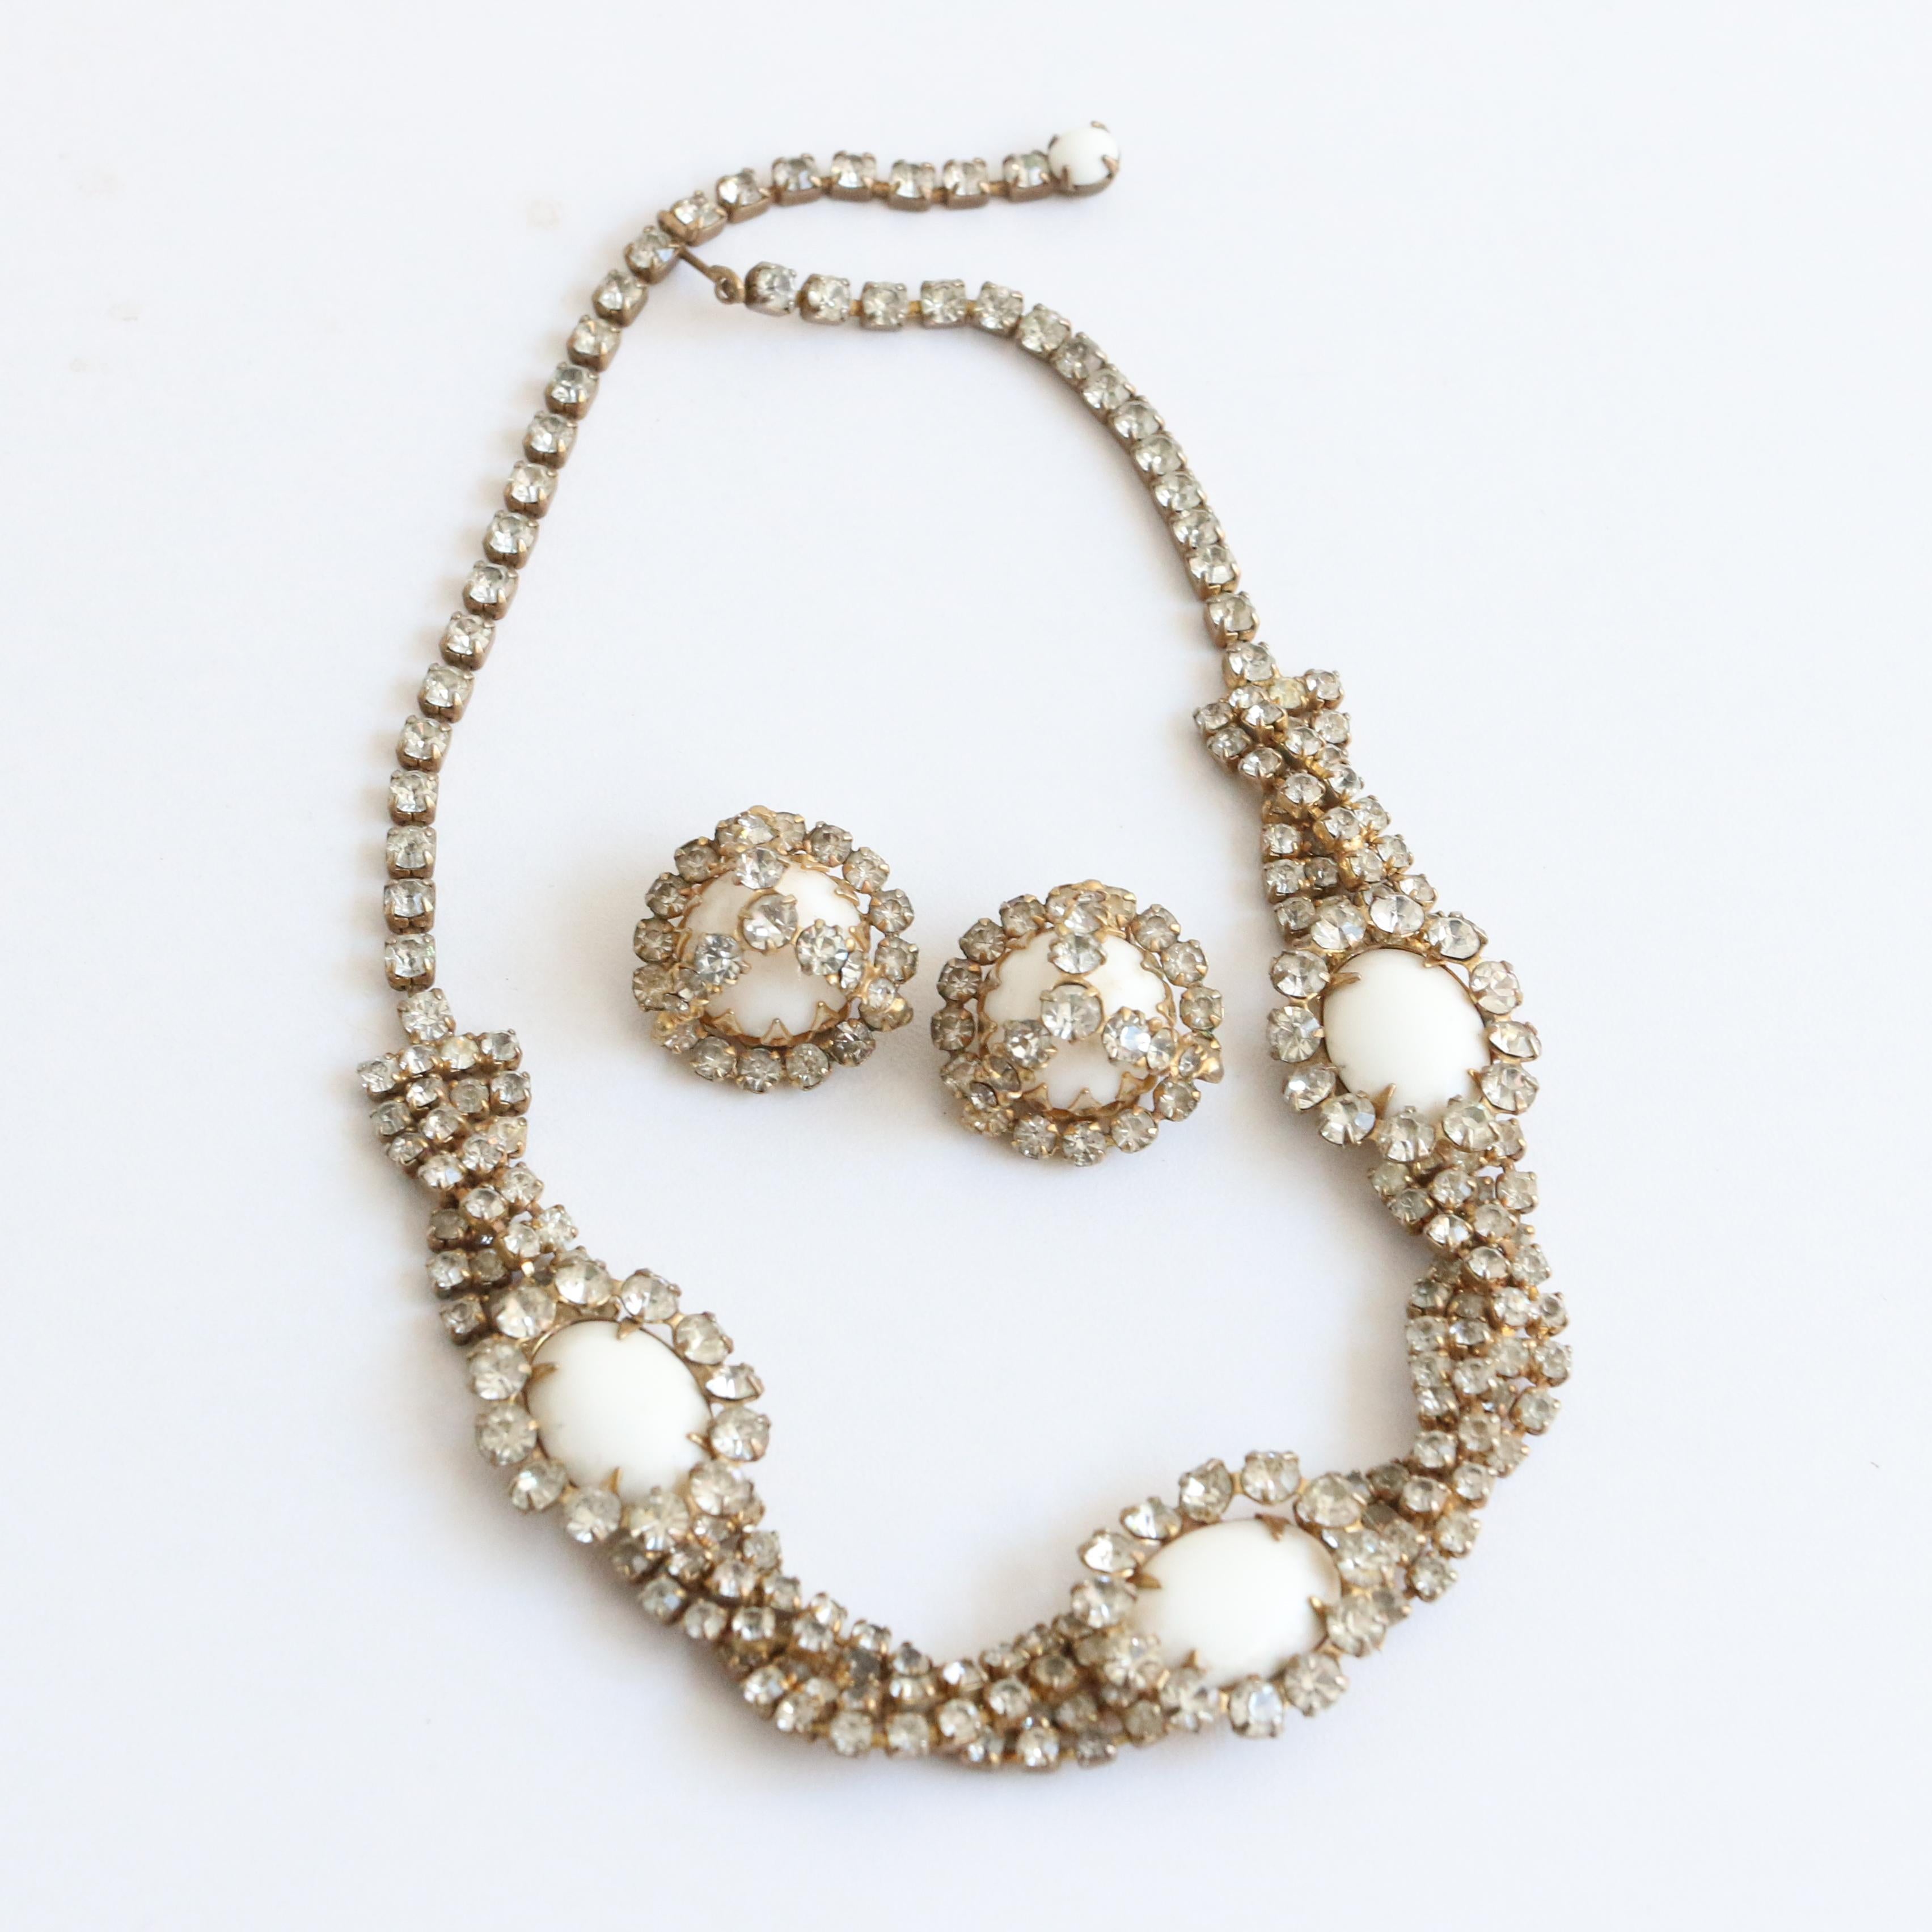 Dieses atemberaubende Schmuckset von Hattie Carnegie aus den 1950er Jahren, bestehend aus einer Halskette und Clip-Ohrringen, ist das perfekte Set, um Ihrem Outfit einen Hauch von Glamour zu verleihen. 

Die verschlungene Halskette hat ein